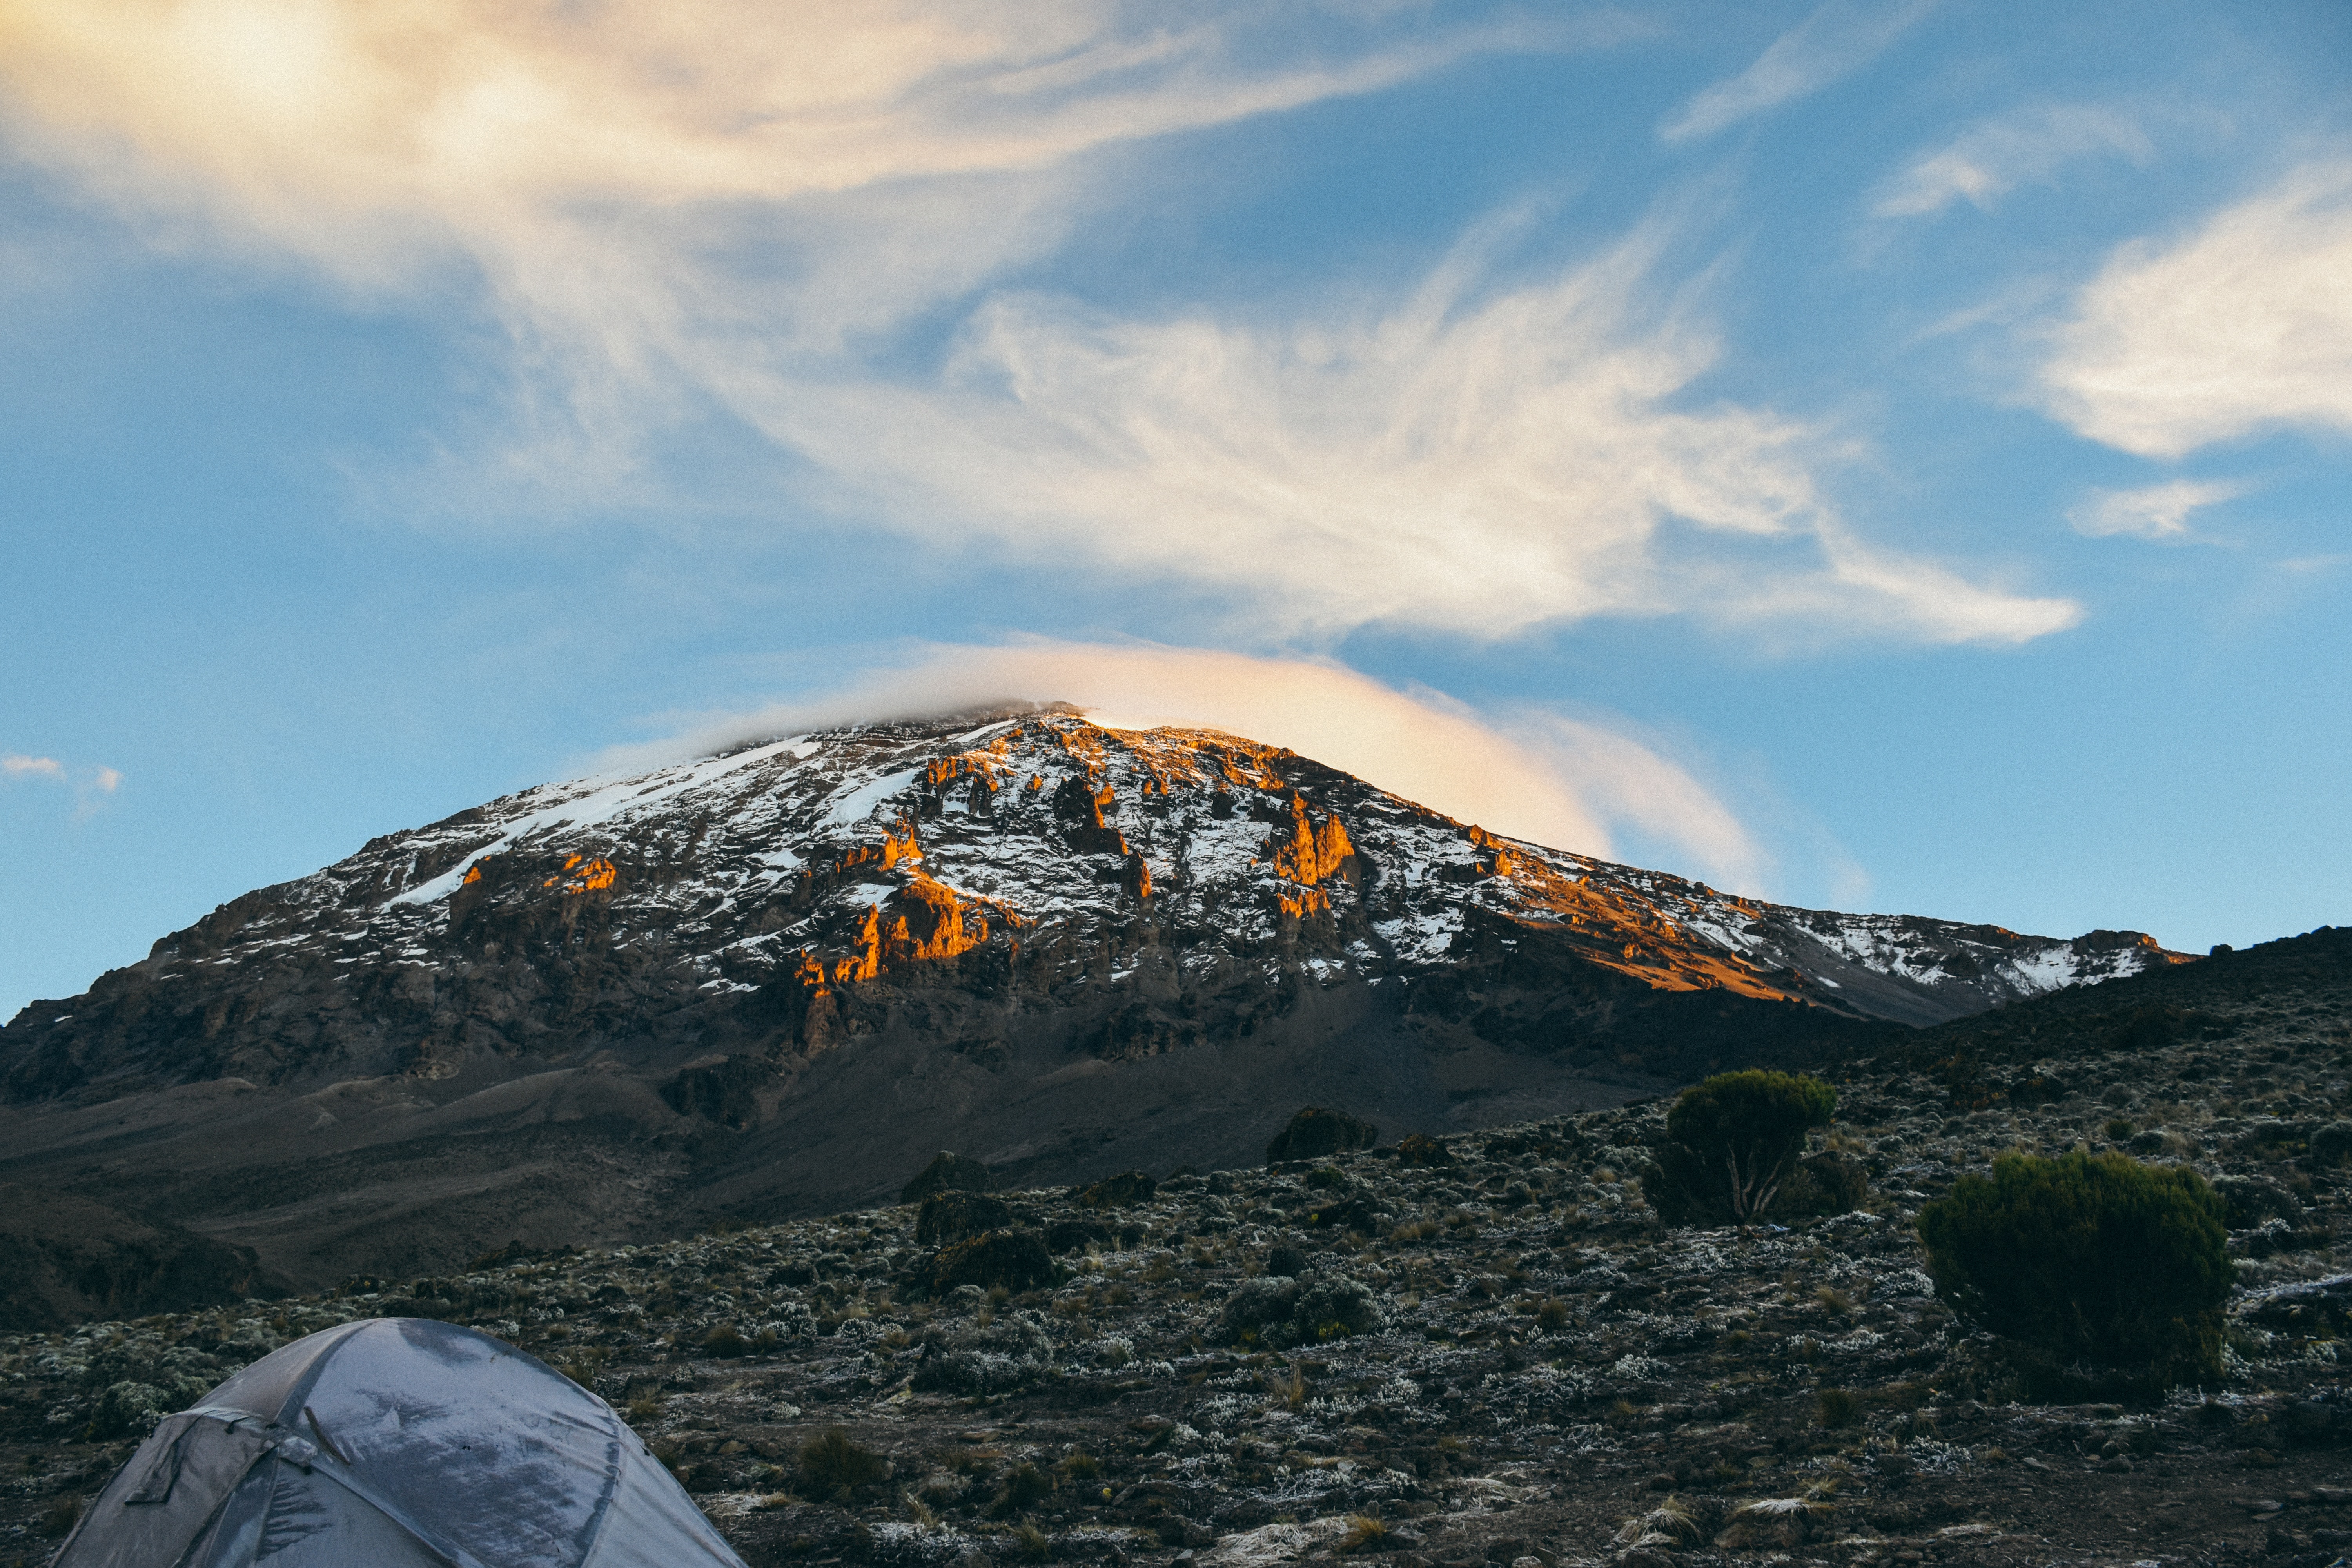 Sunrise over Mount Kilimanjaro